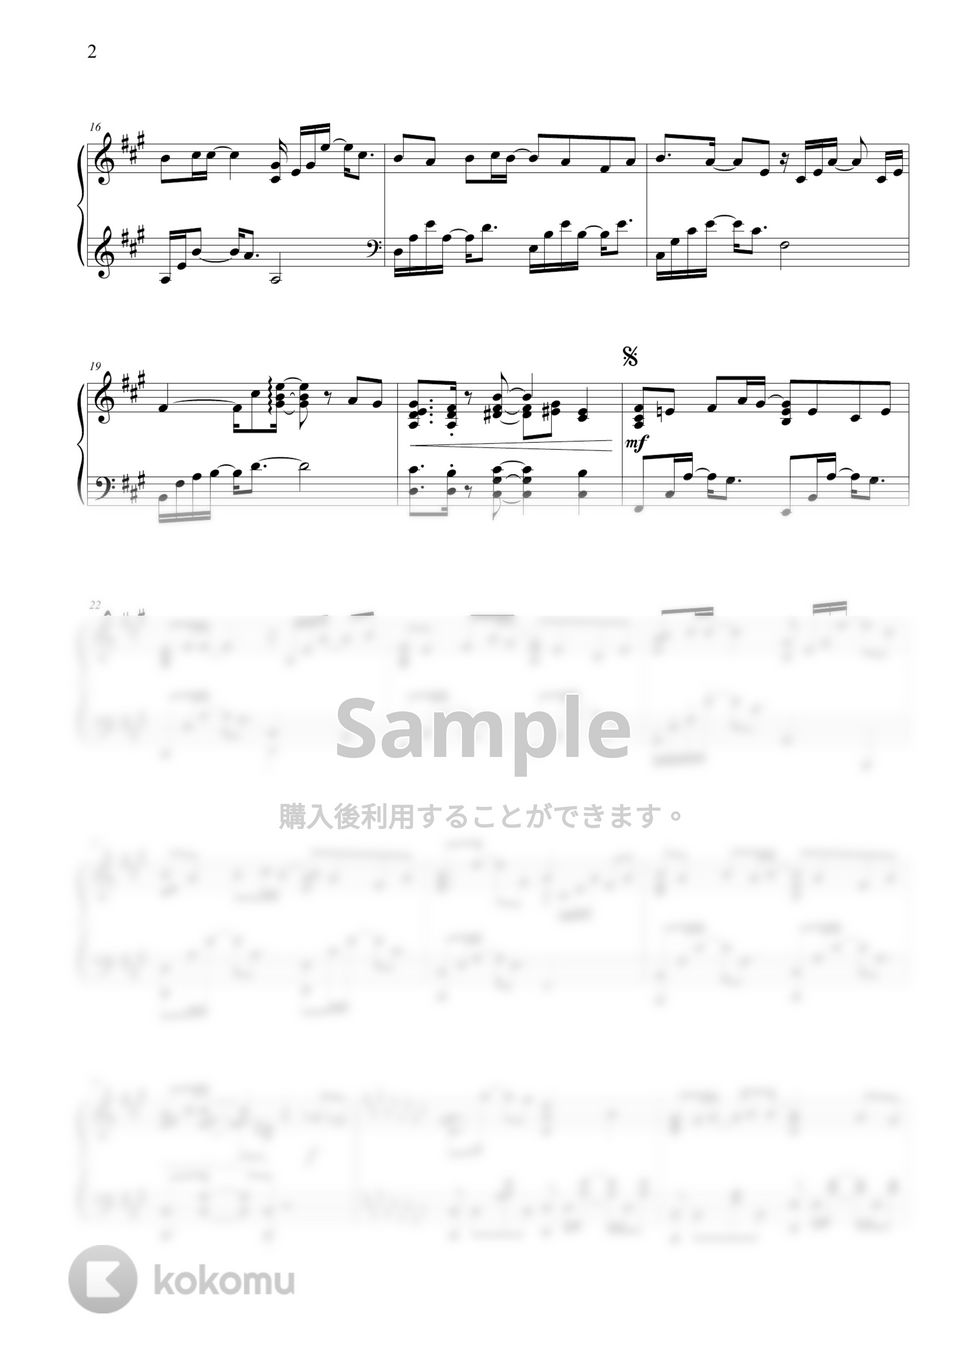 天官赐福 (Heaven Official’s Blessing) - 一花一剣 (One flower One sword) by THIS IS PIANO